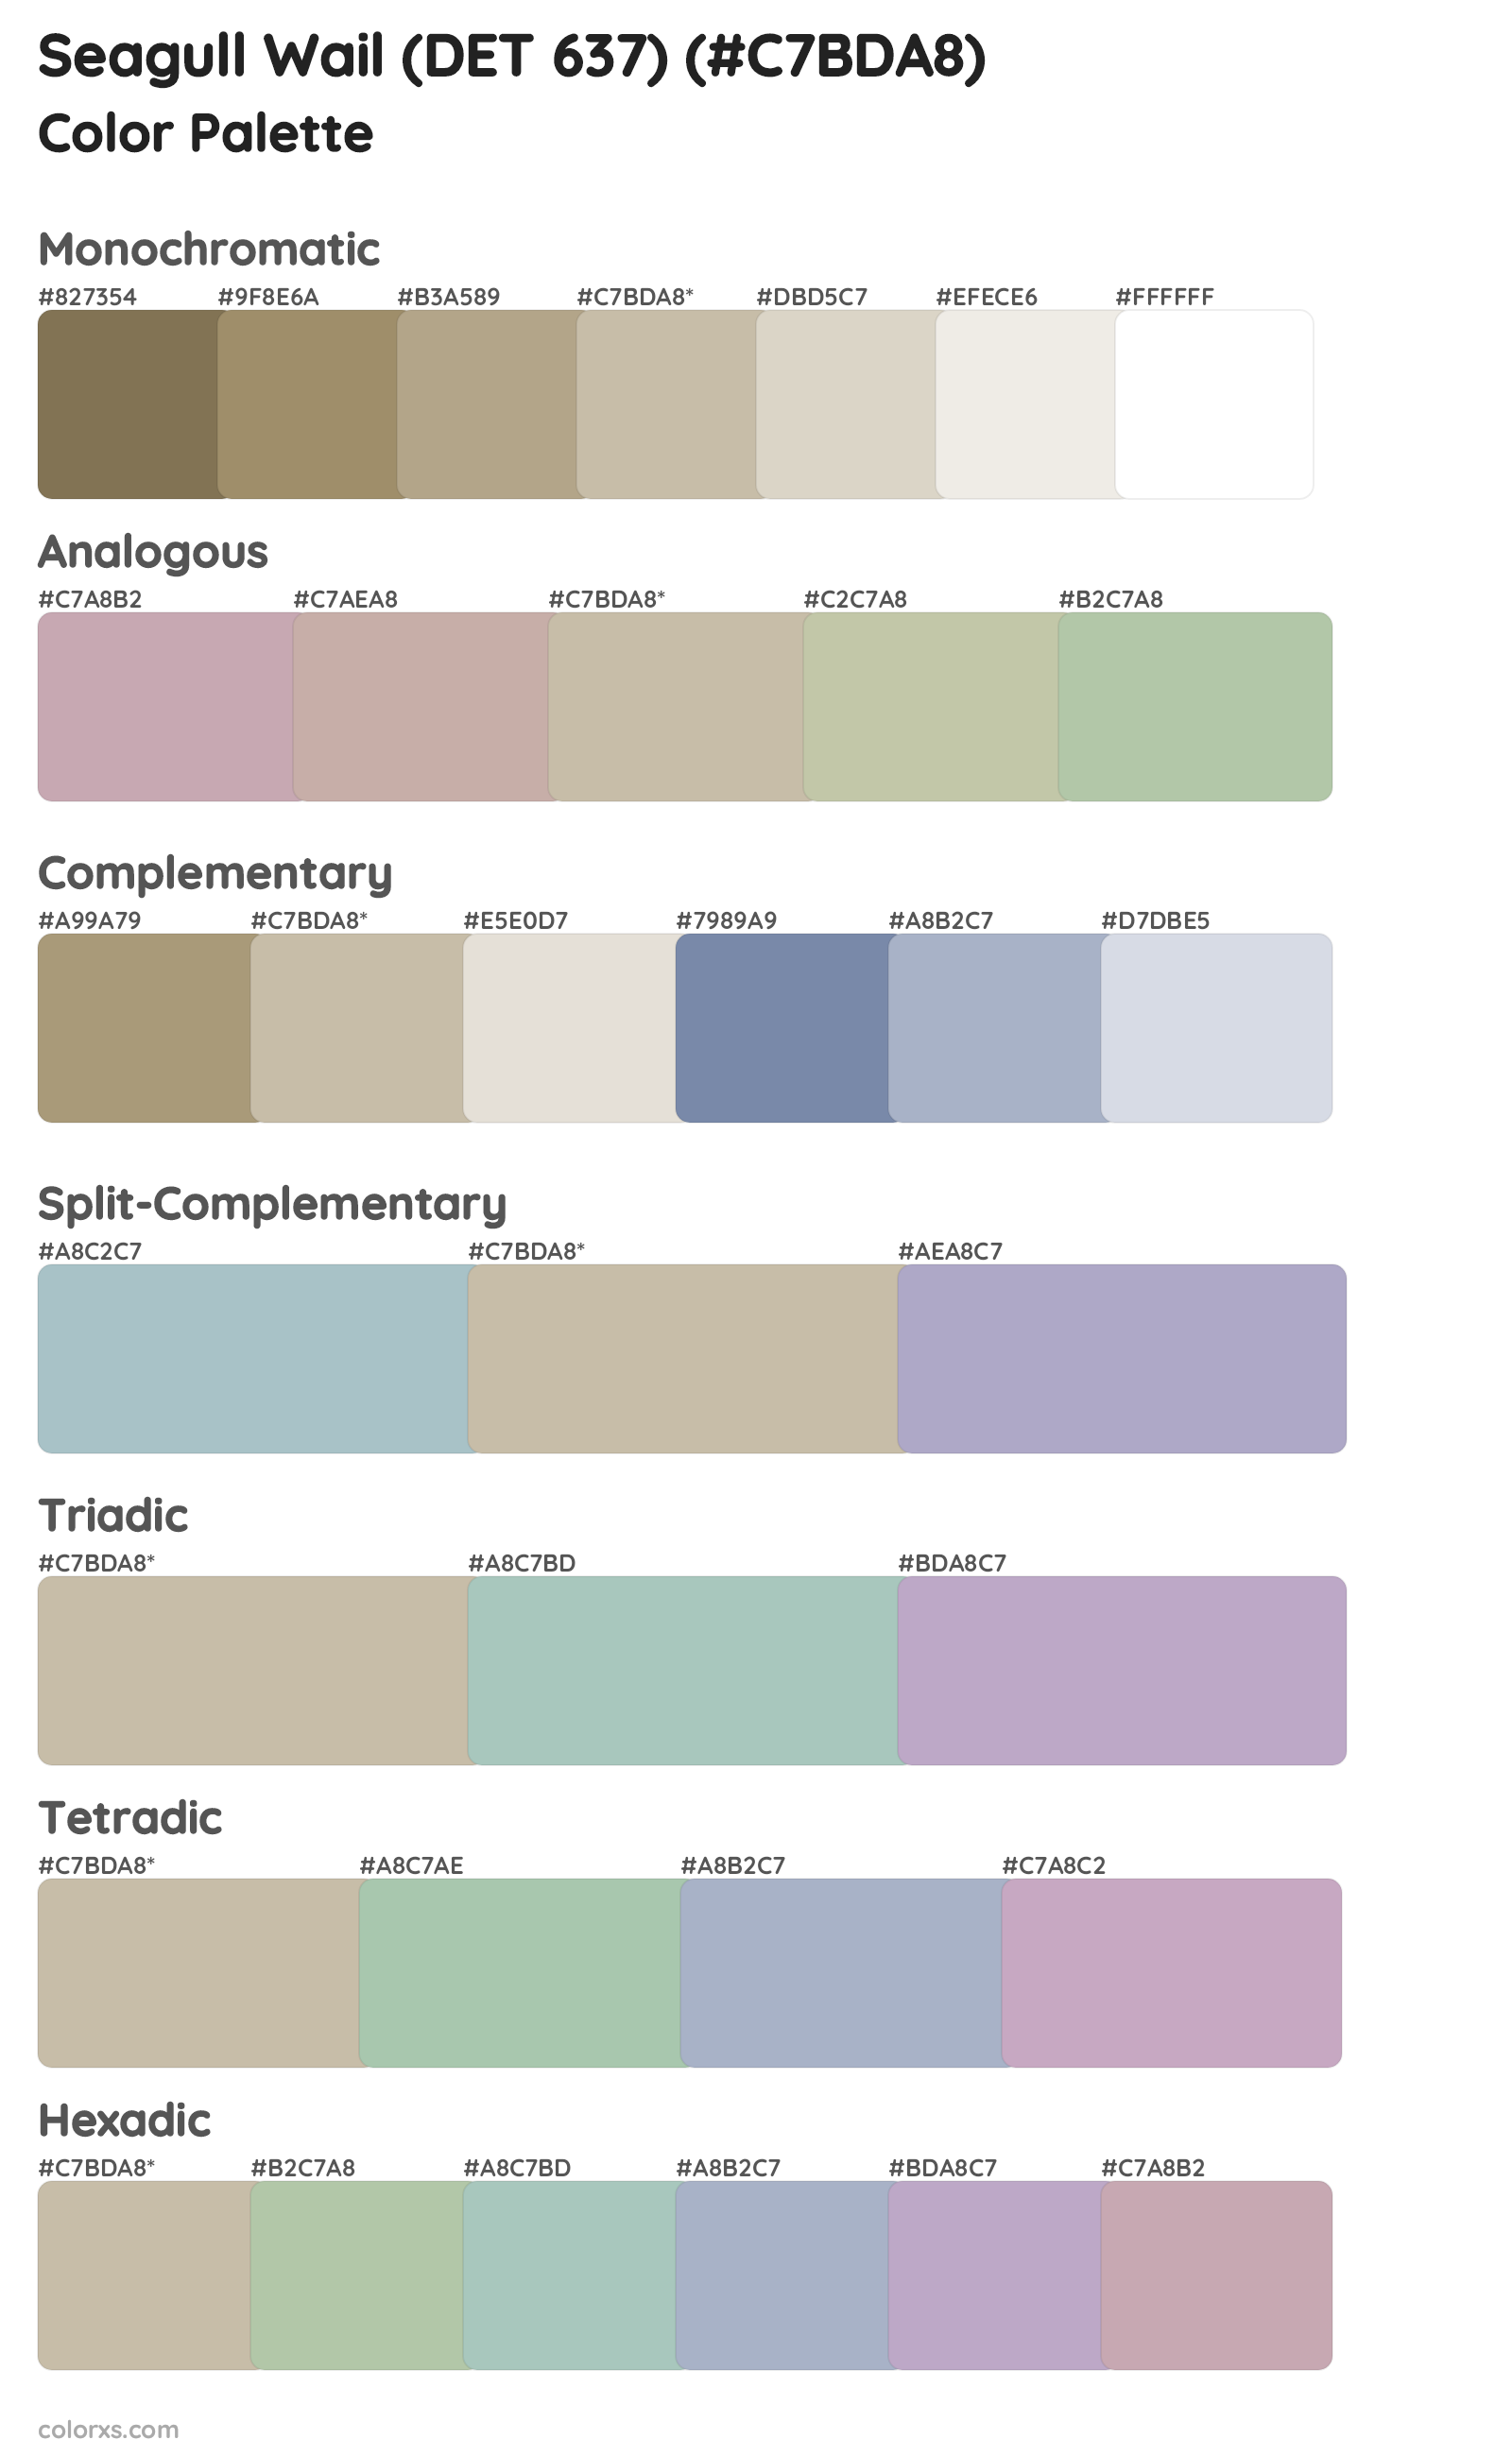 Seagull Wail (DET 637) Color Scheme Palettes